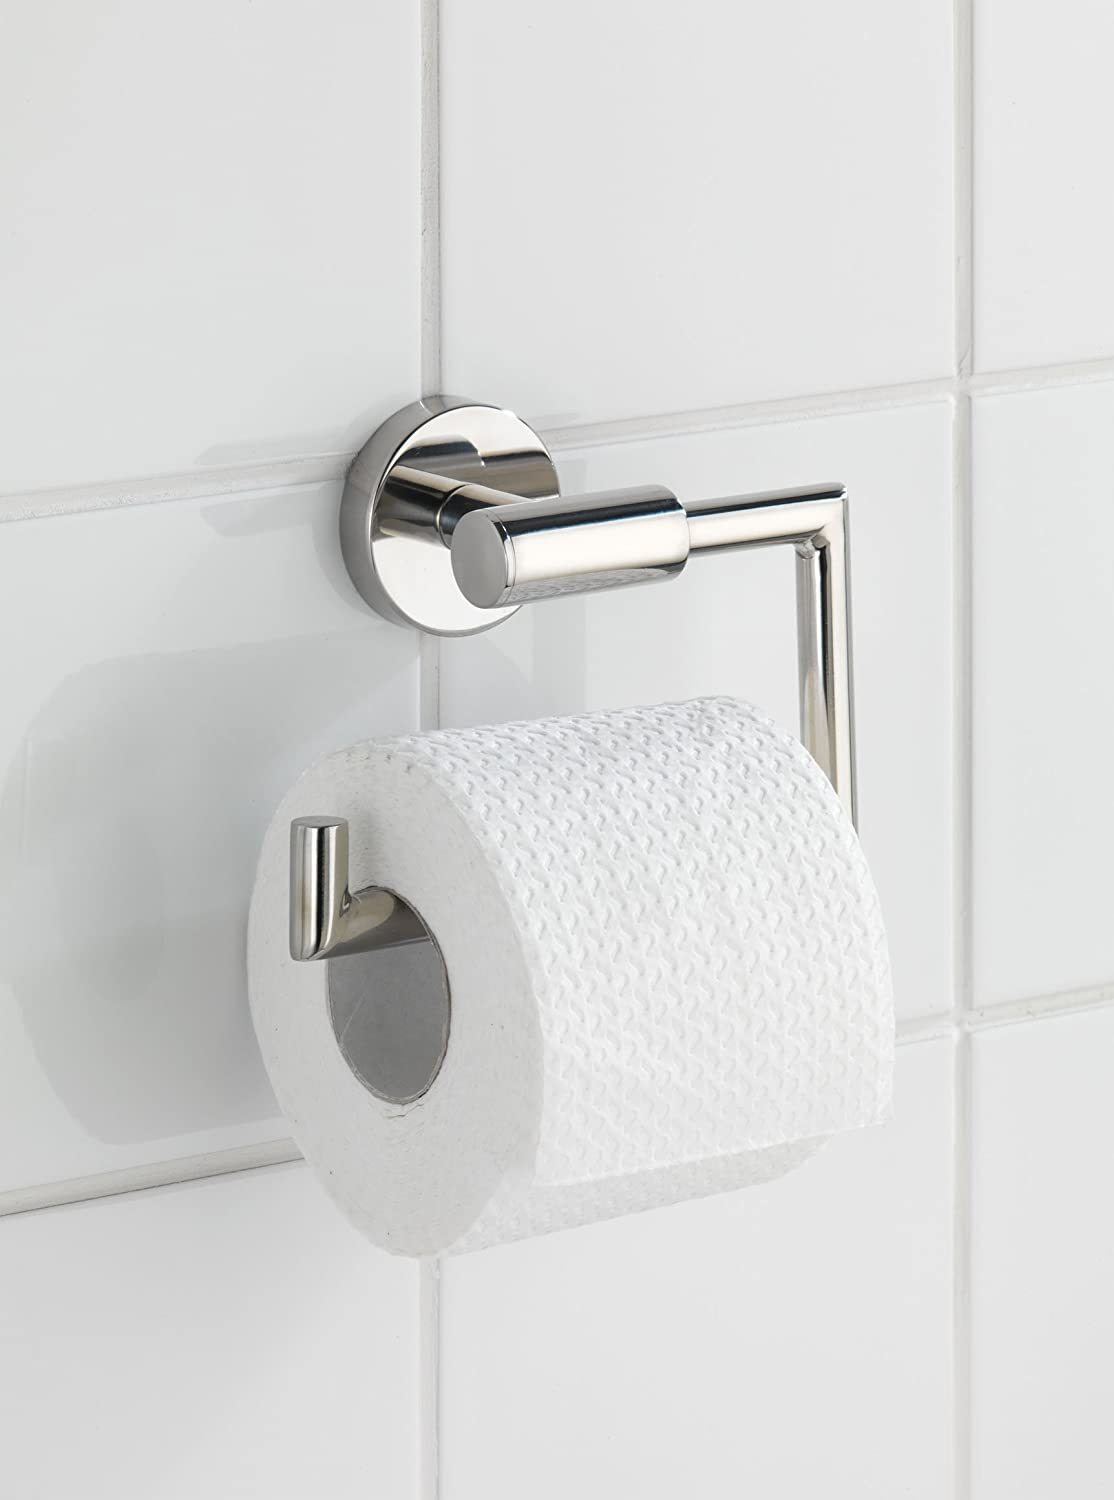 Toilettenpapierhalter Bosio Edelstahl glänzend - WC-Rollenhalter, ohne Deckel, Edelstahl rostfrei, 15 x 10.5 x 6.5 cm, Glänzend